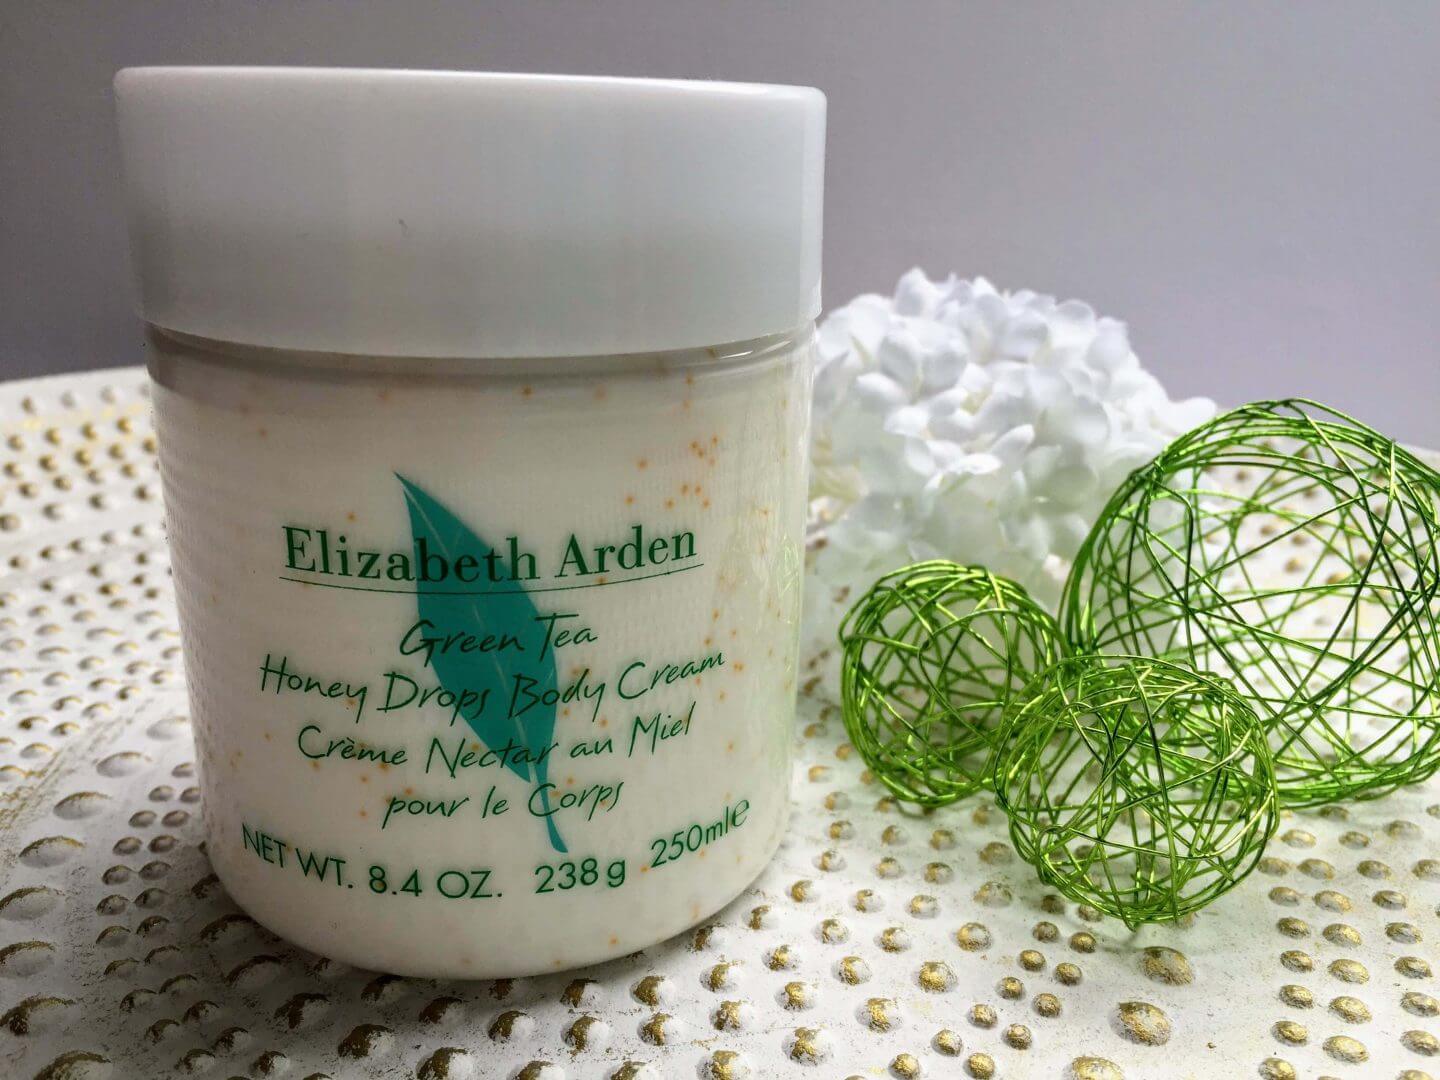 Green Tea Honey Drops Body Cream von Elisabeth Arden im Tiegel 